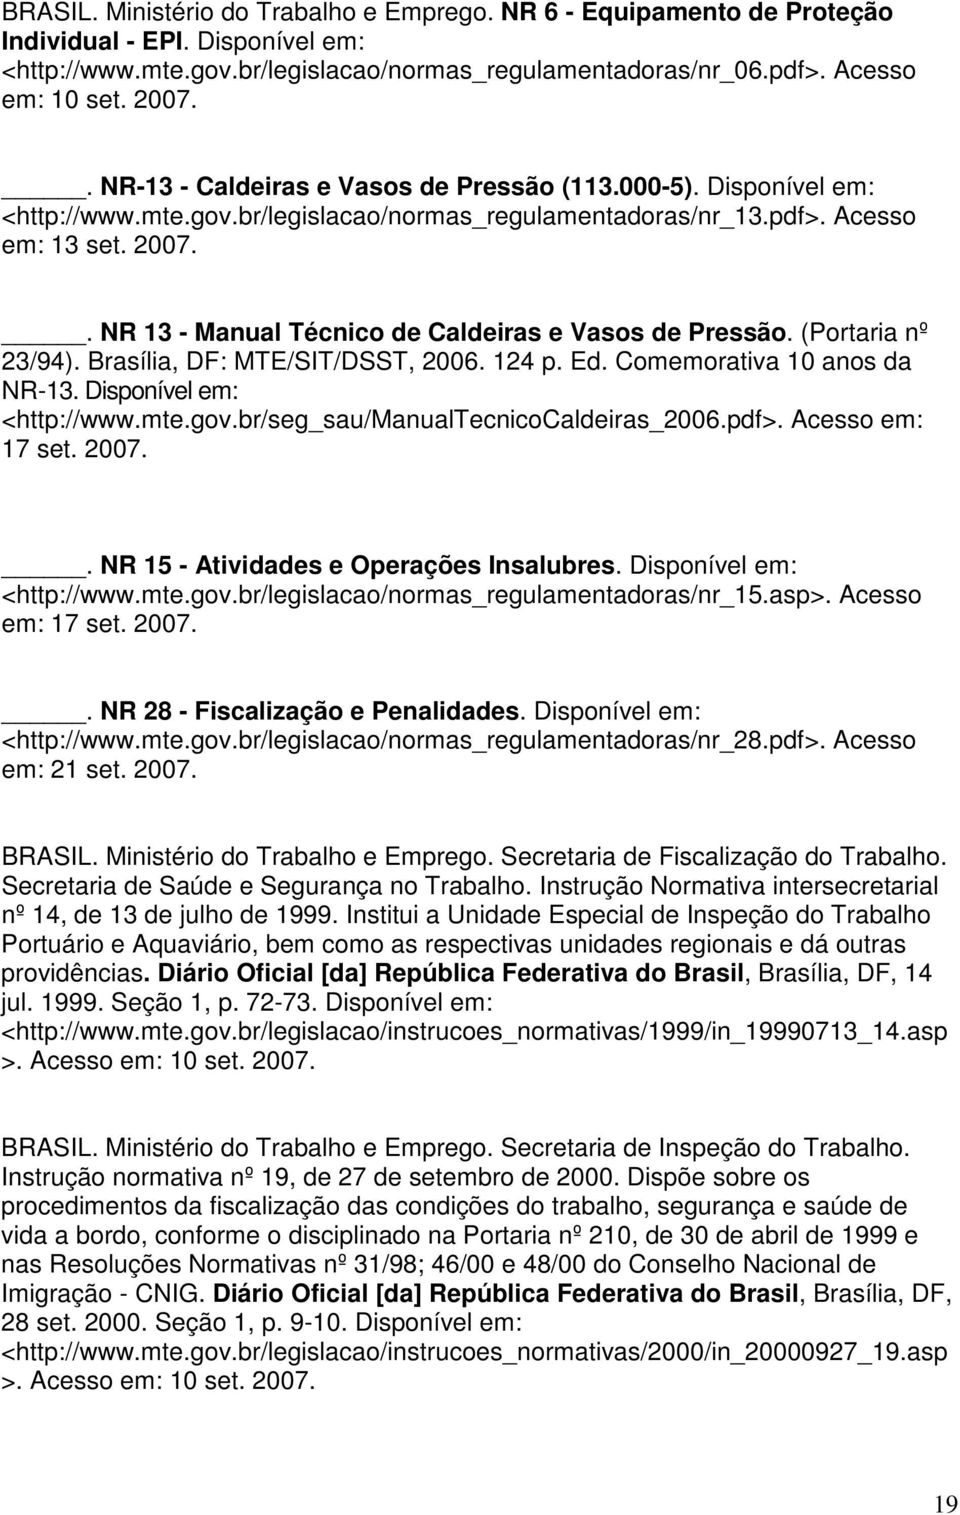 . NR 13 - Manual Técnico de Caldeiras e Vasos de Pressão. (Portaria nº 23/94). Brasília, DF: MTE/SIT/DSST, 2006. 124 p. Ed. Comemorativa 10 anos da NR-13. Disponível em: <http://www.mte.gov.